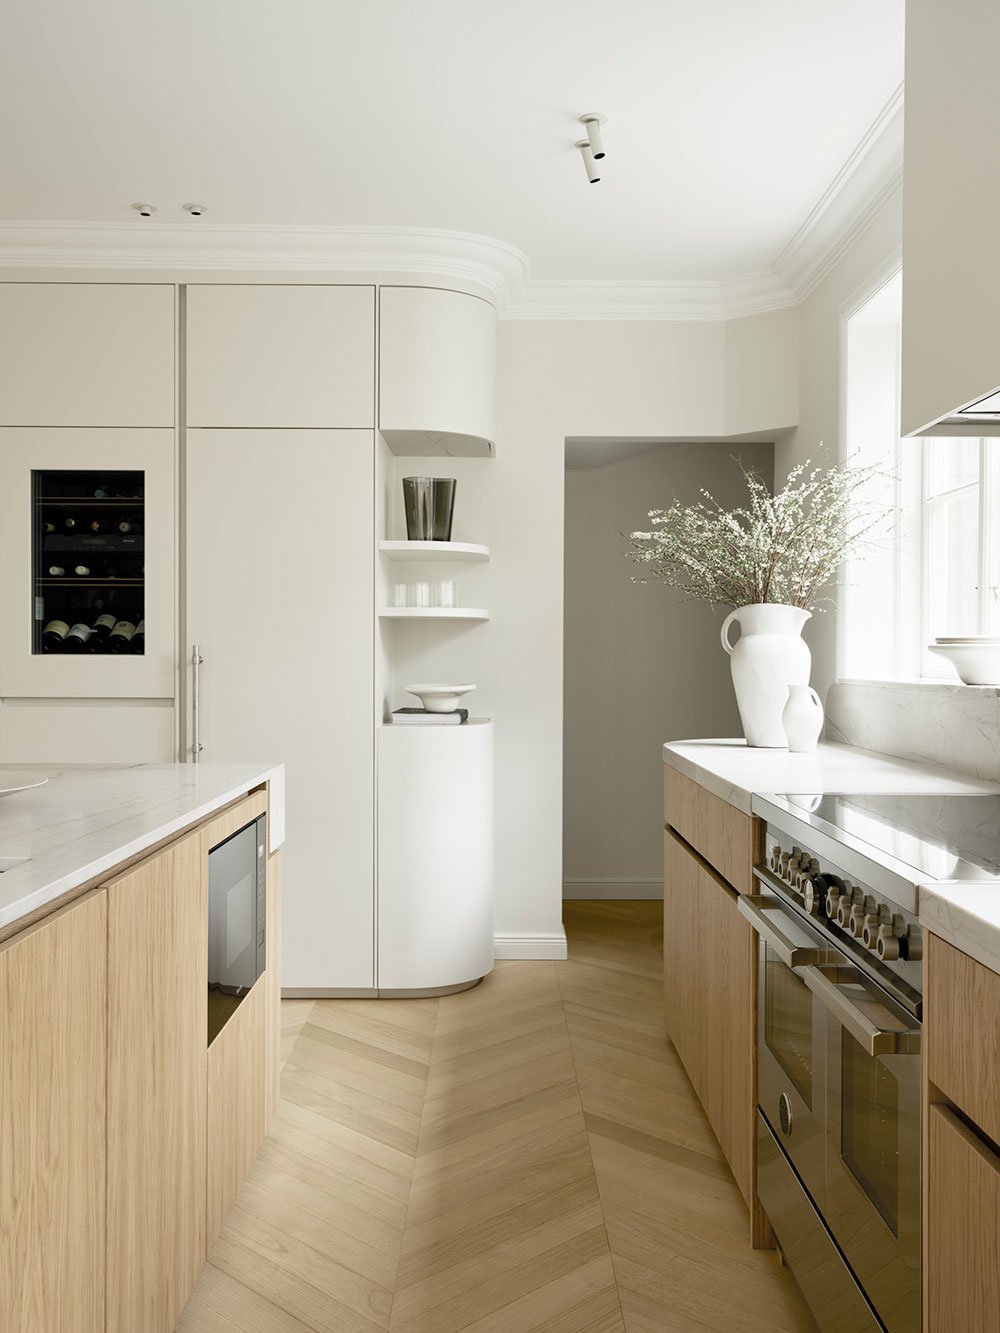 Create a unique kitchen - combine kitchen styles — Nordiska Kök